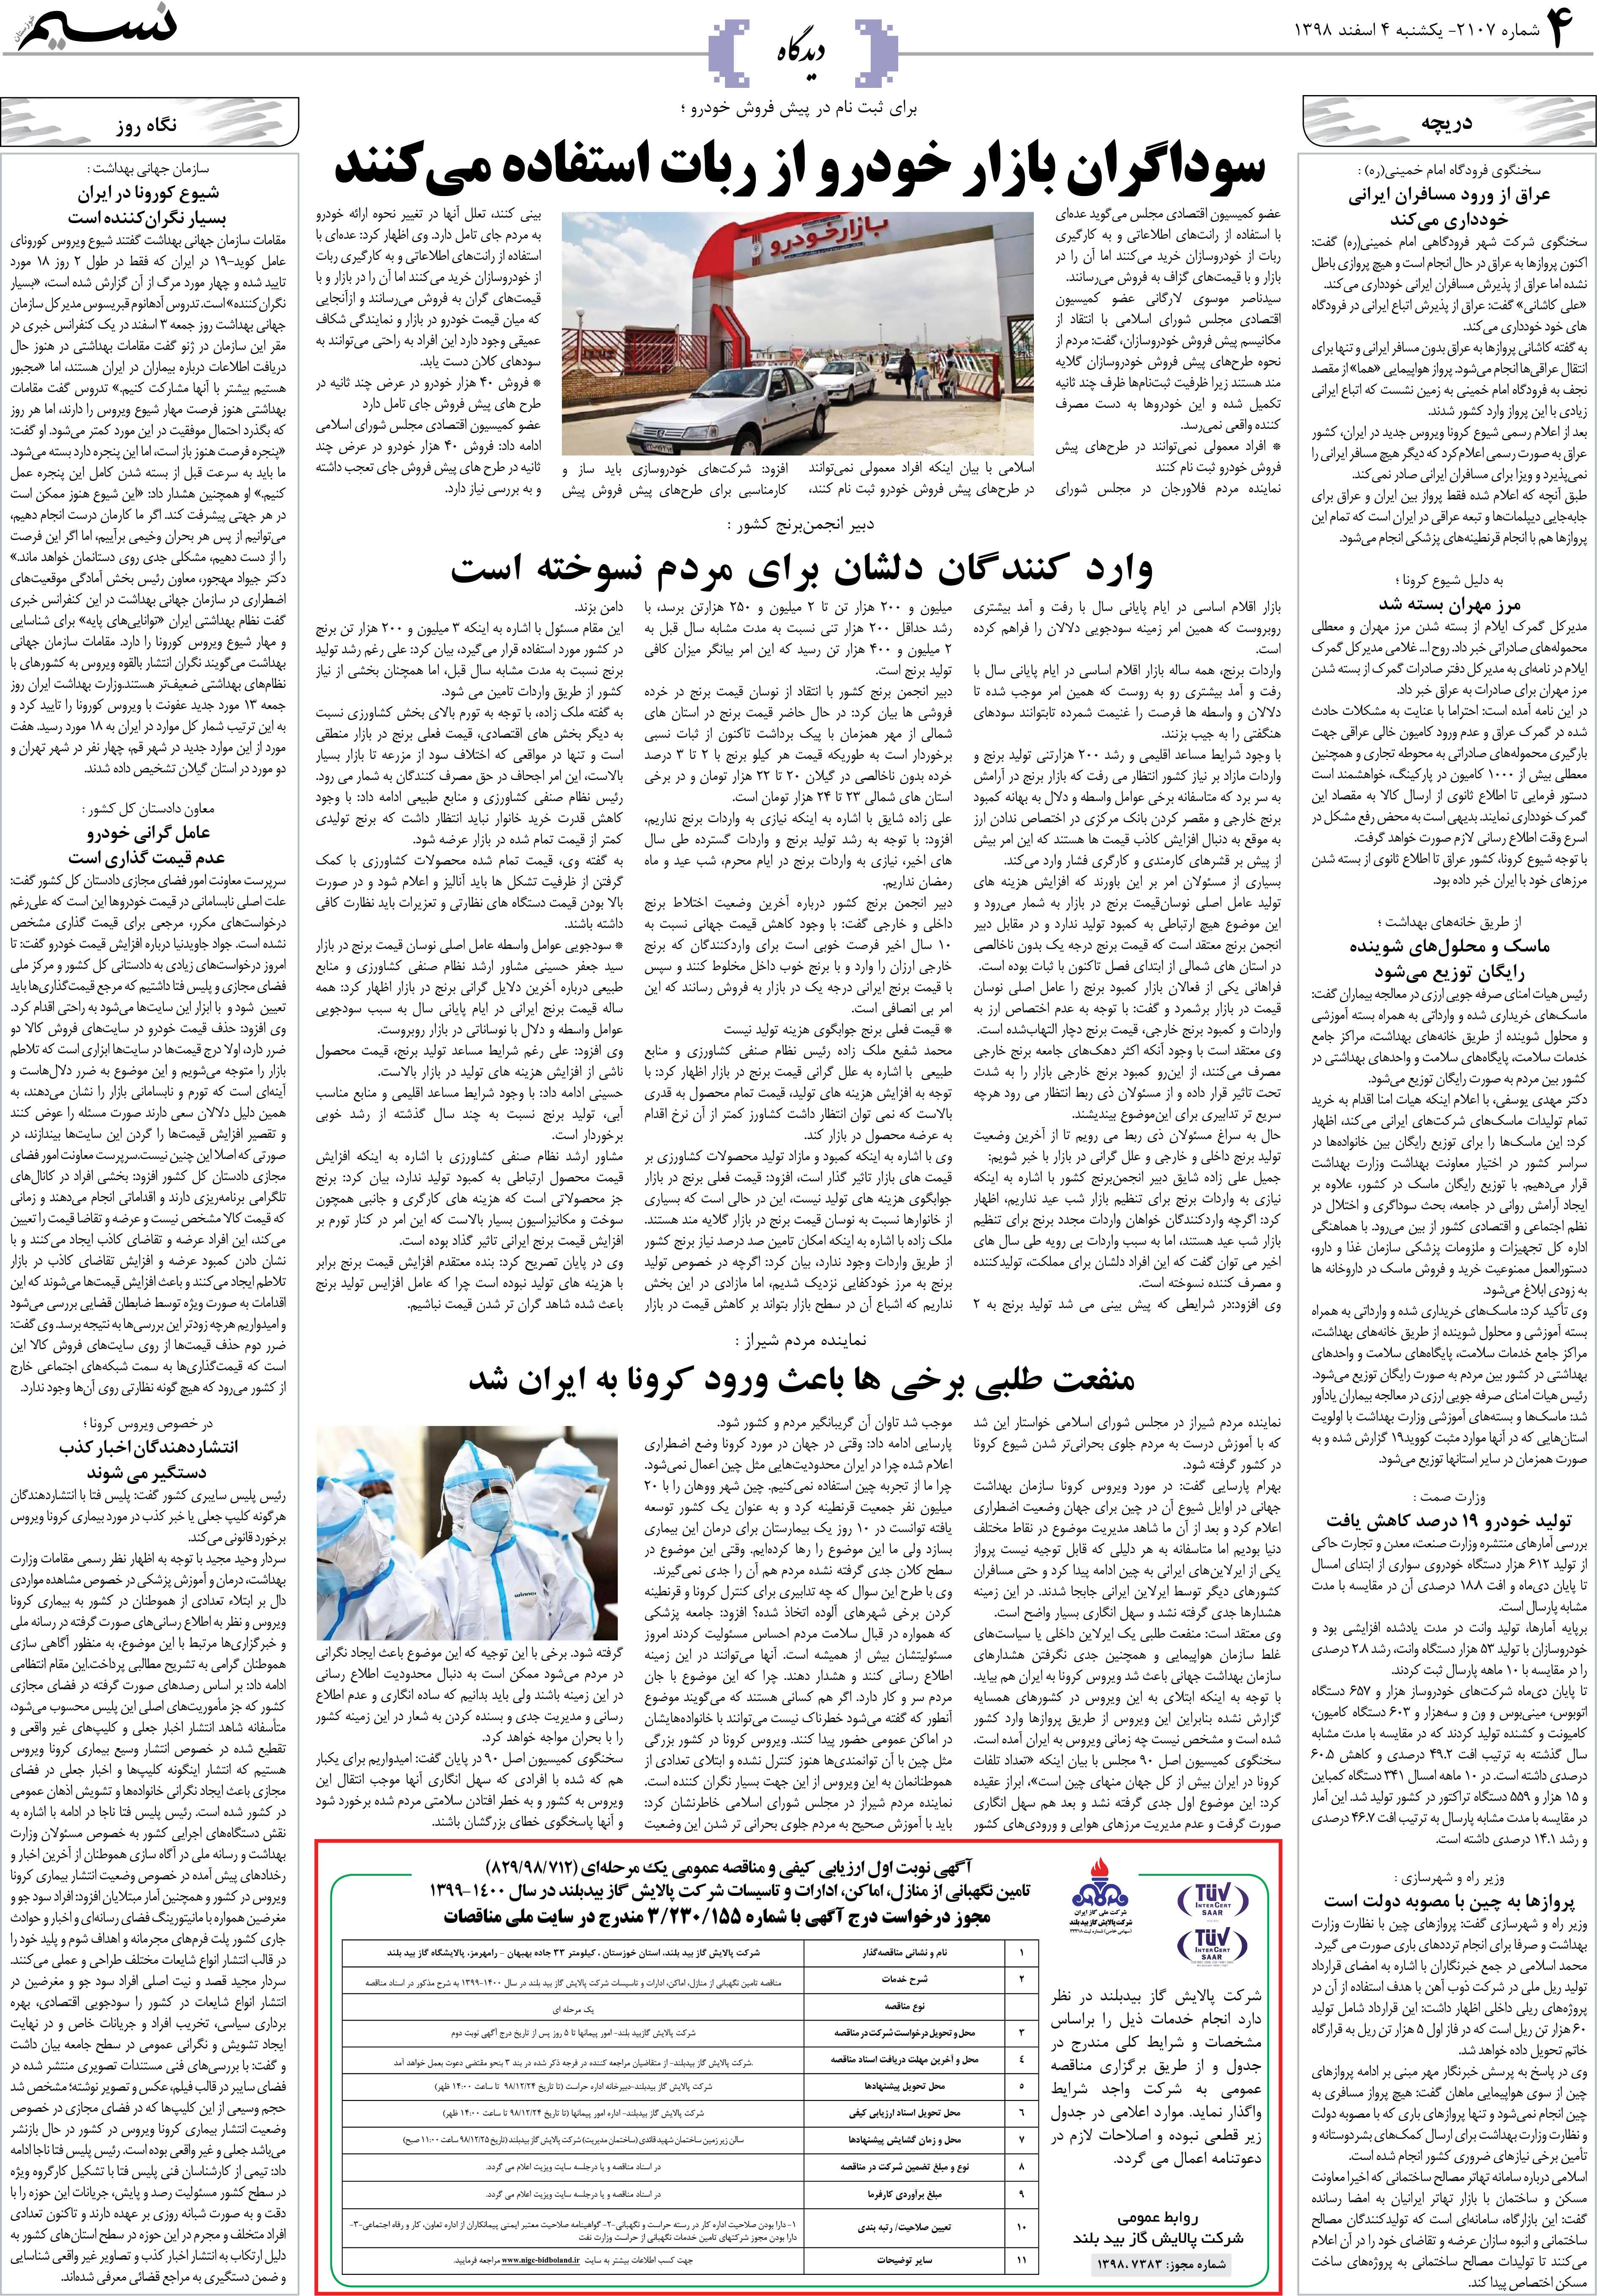 صفحه دیدگاه روزنامه نسیم شماره 2107